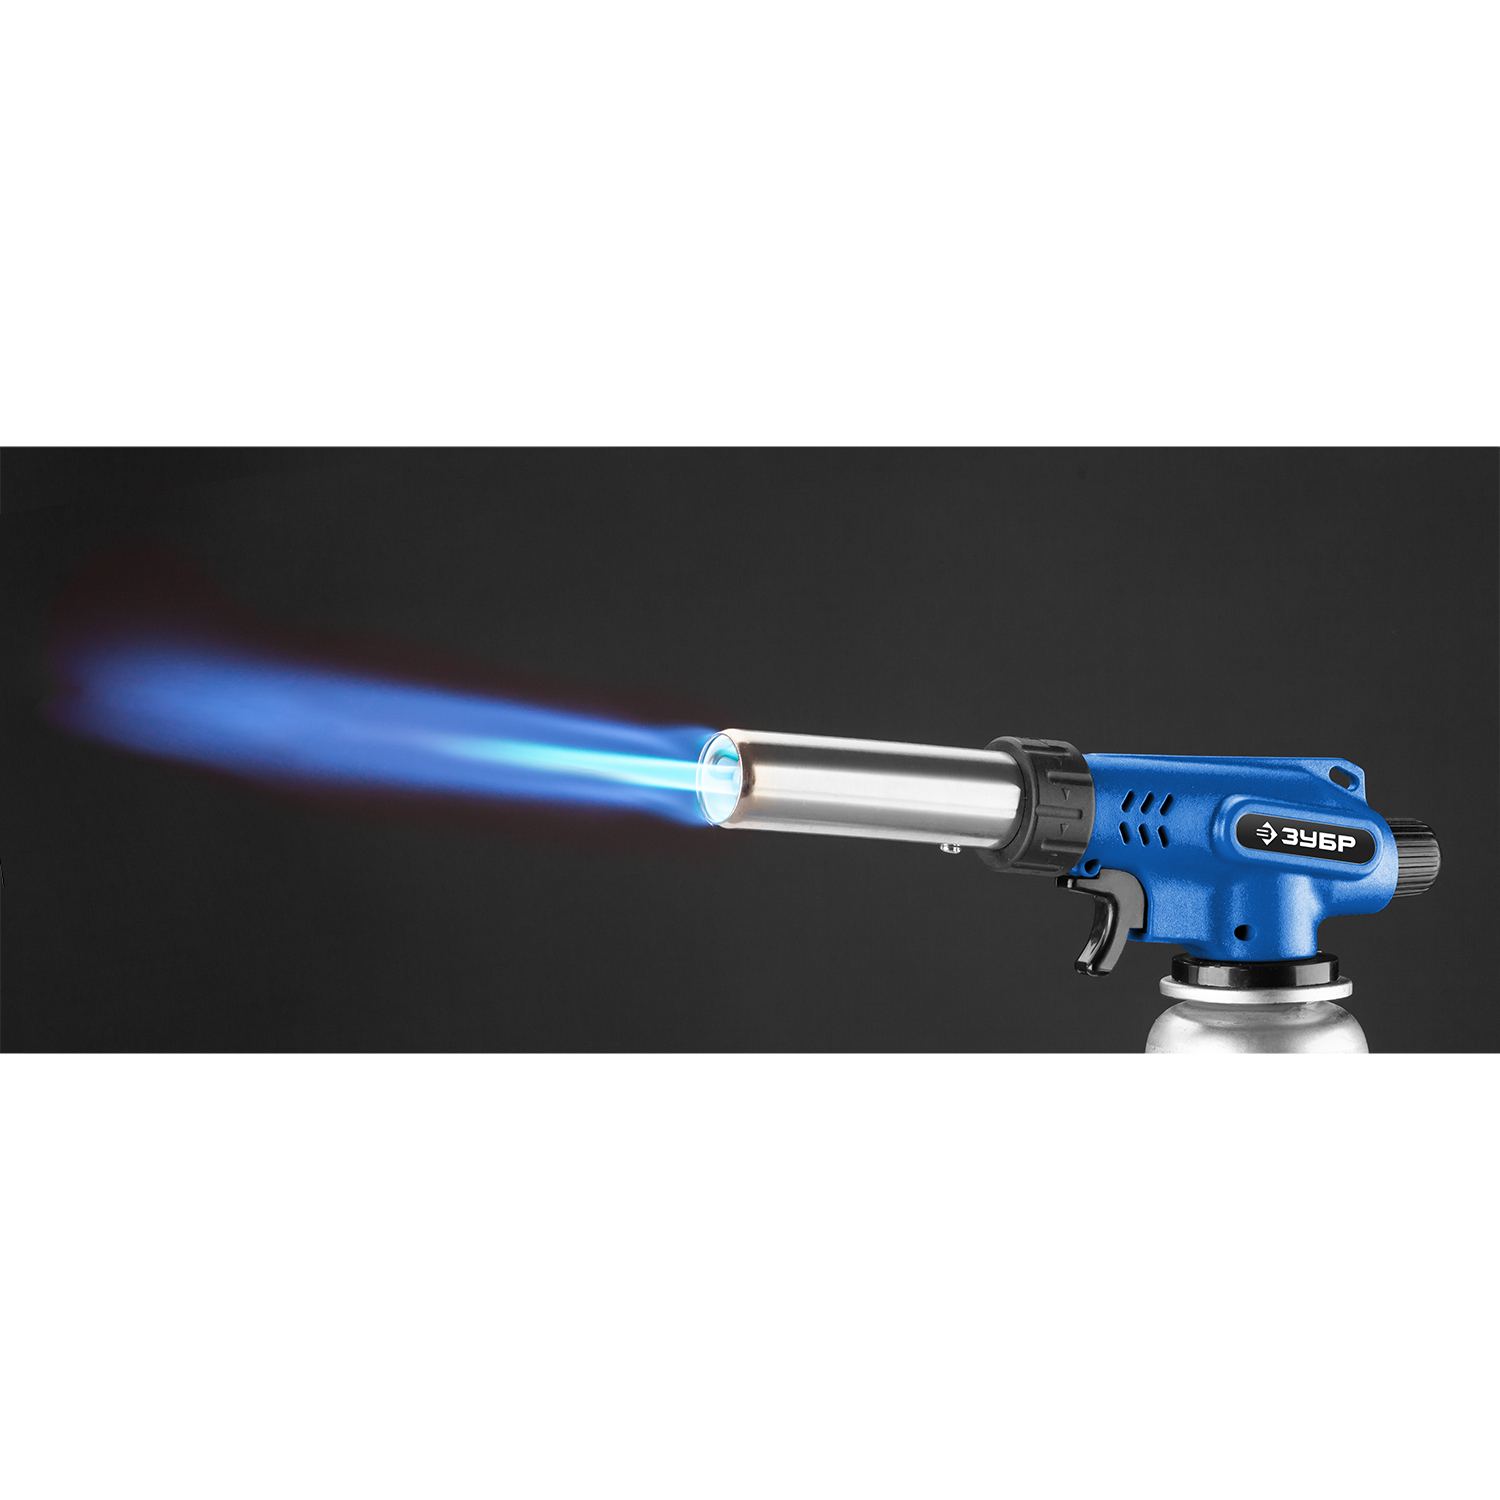 ЗУБР ГП-500, 1300°C, увеличенный выход пламени, газовая горелка с пьезоподжигом на баллон с цанговым соединением, Профессионал (55552)